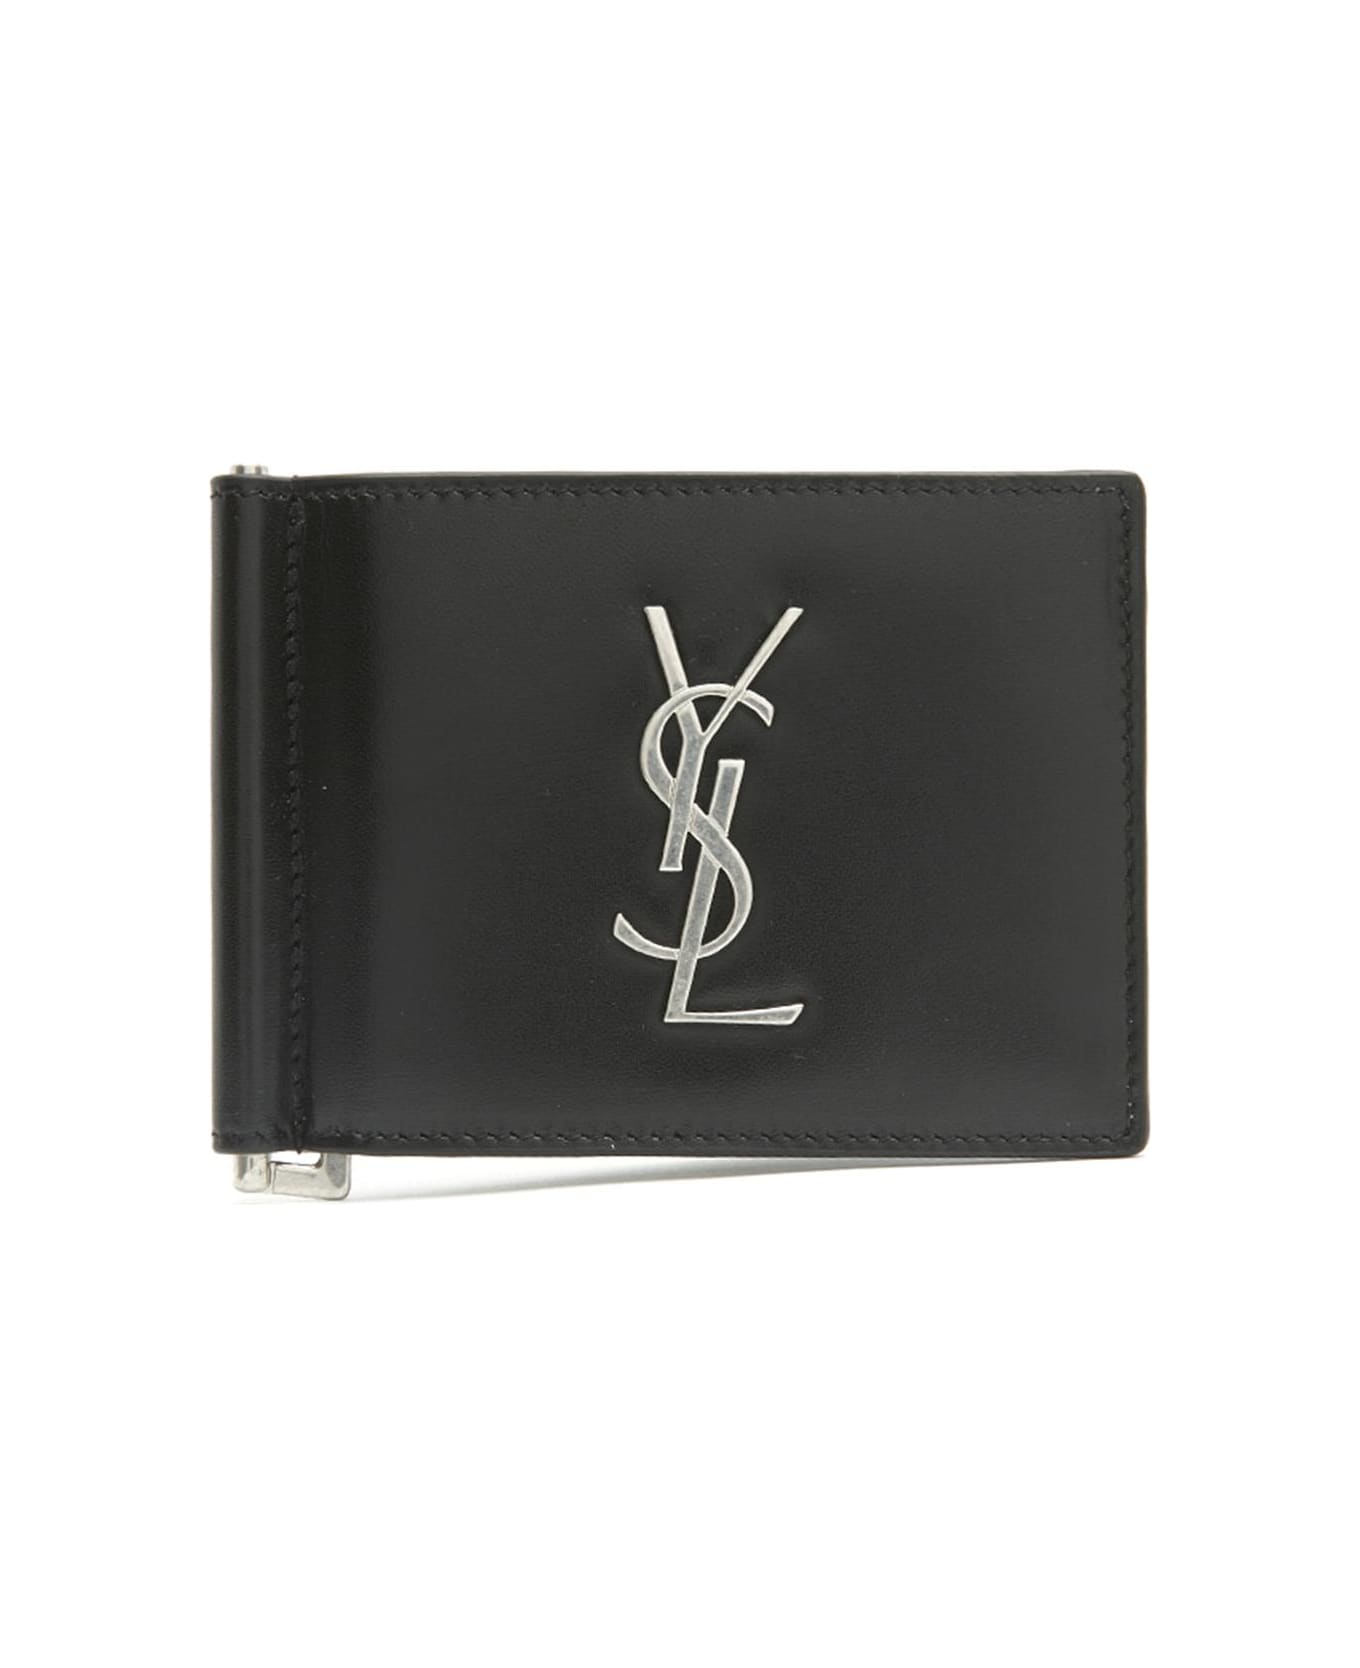 Saint Laurent 'monogram' Wallet - Black 財布